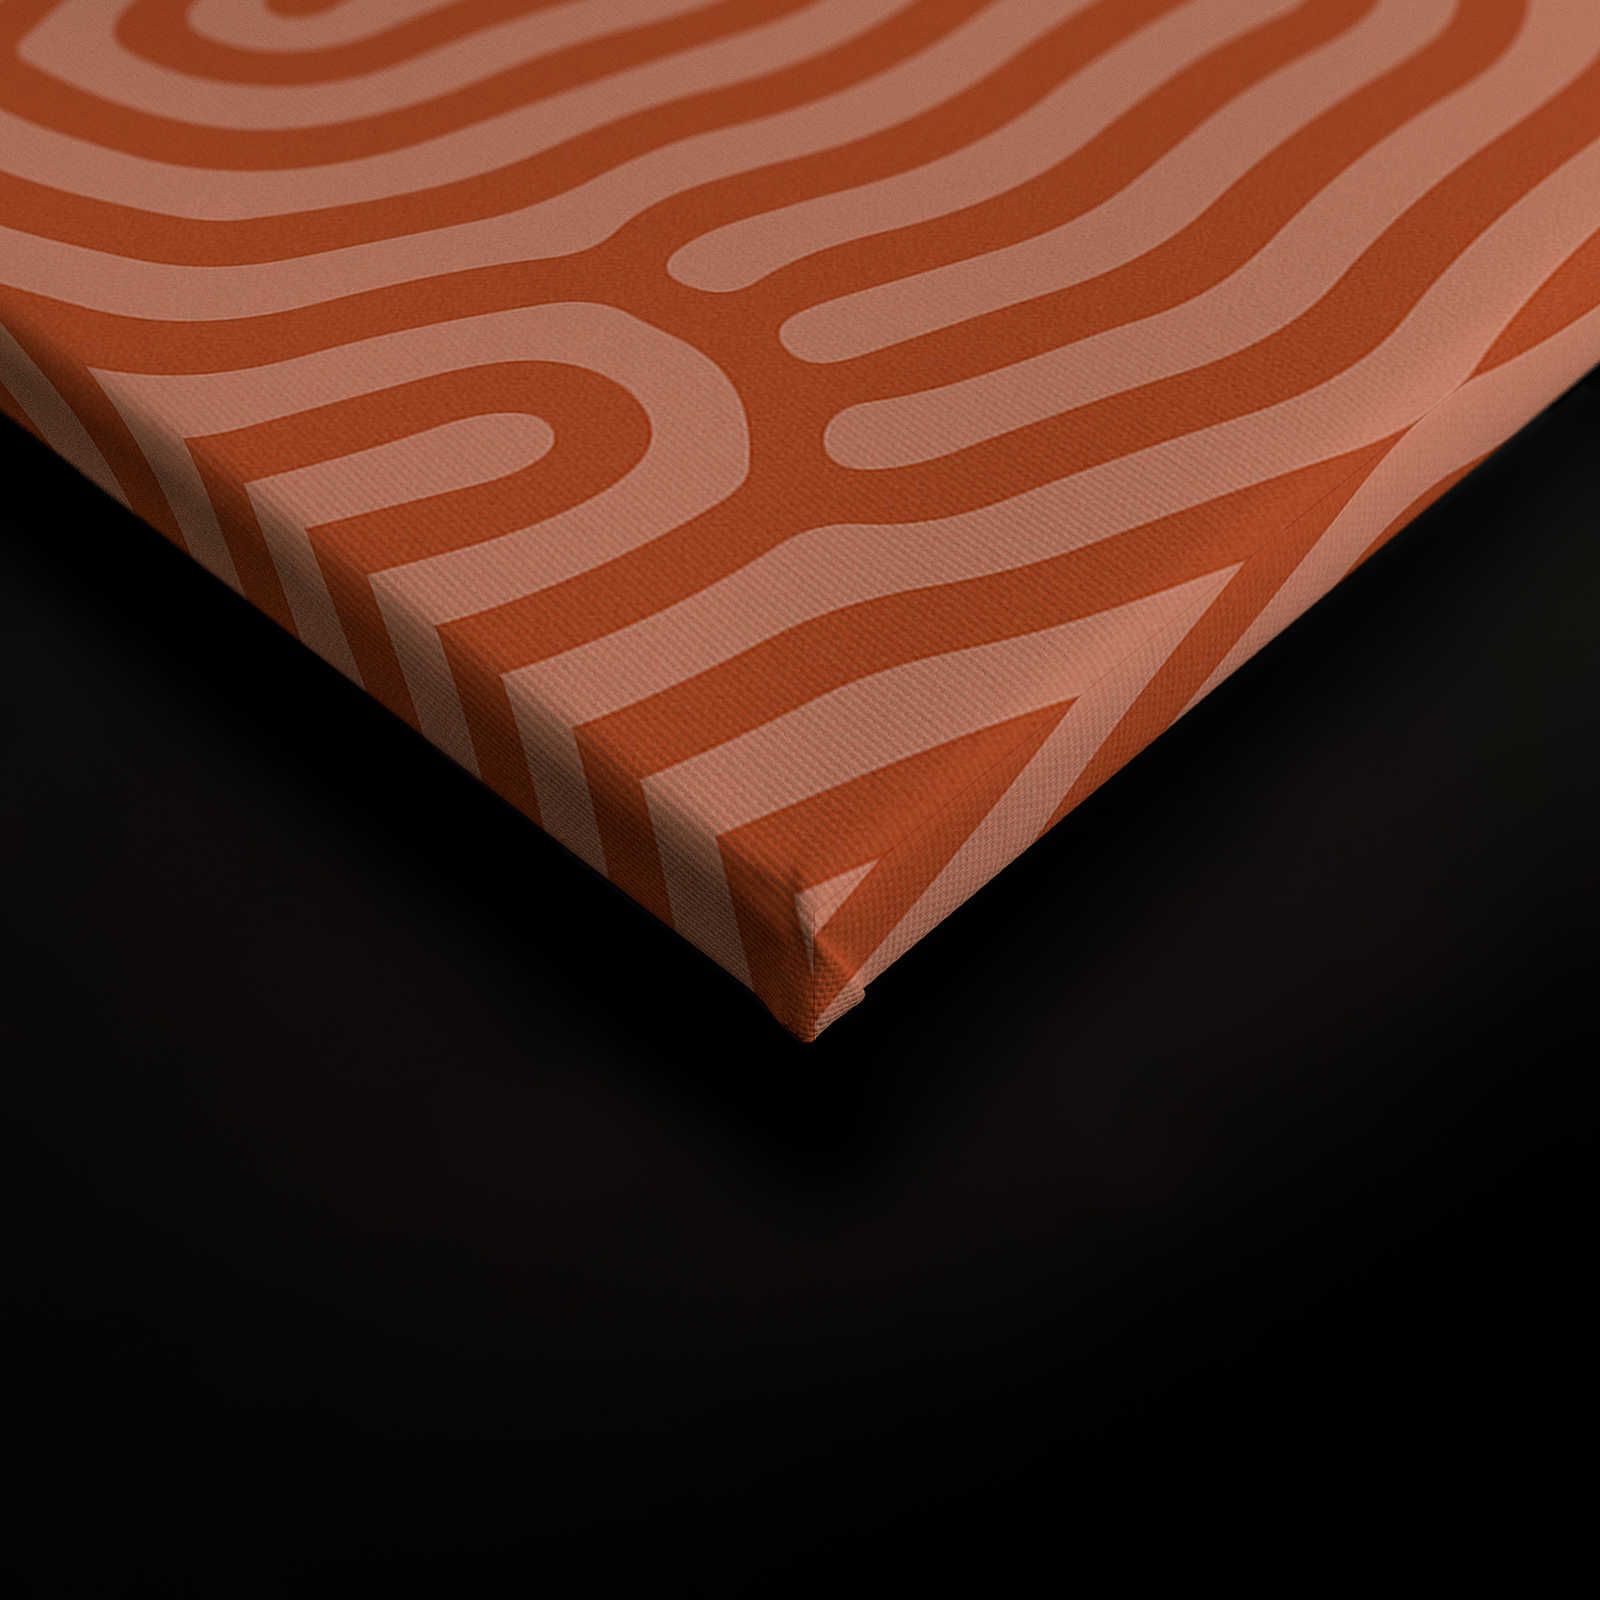             Sahel 3 - Rotes Leinwandbild mit organischem Linien-Muster – 0,90 m x 0,60 m
        